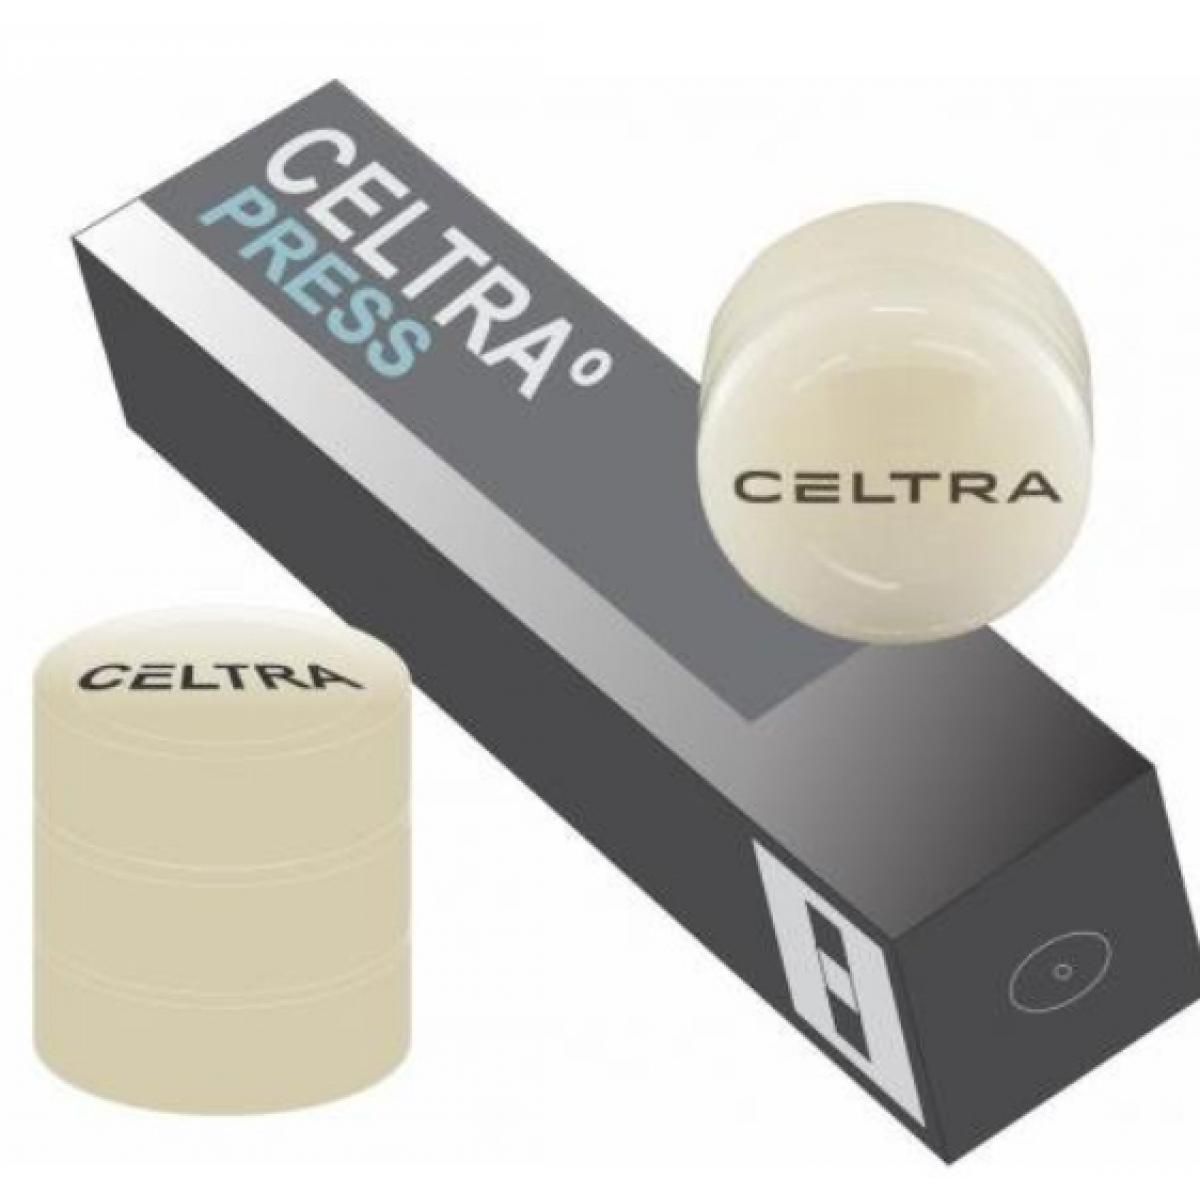 CELTRA PRESS MT D2 5 X 3 GR DENTSPLY -